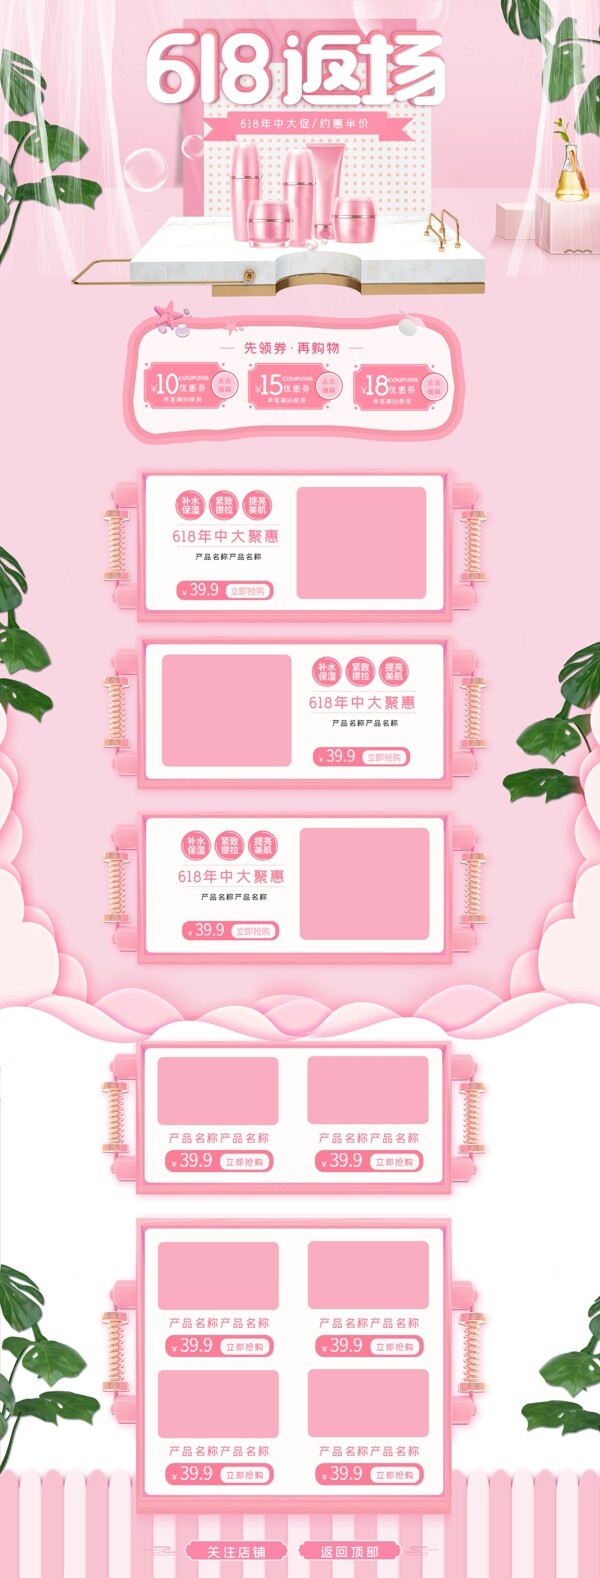 粉色618购物节化妆品促销首页图片